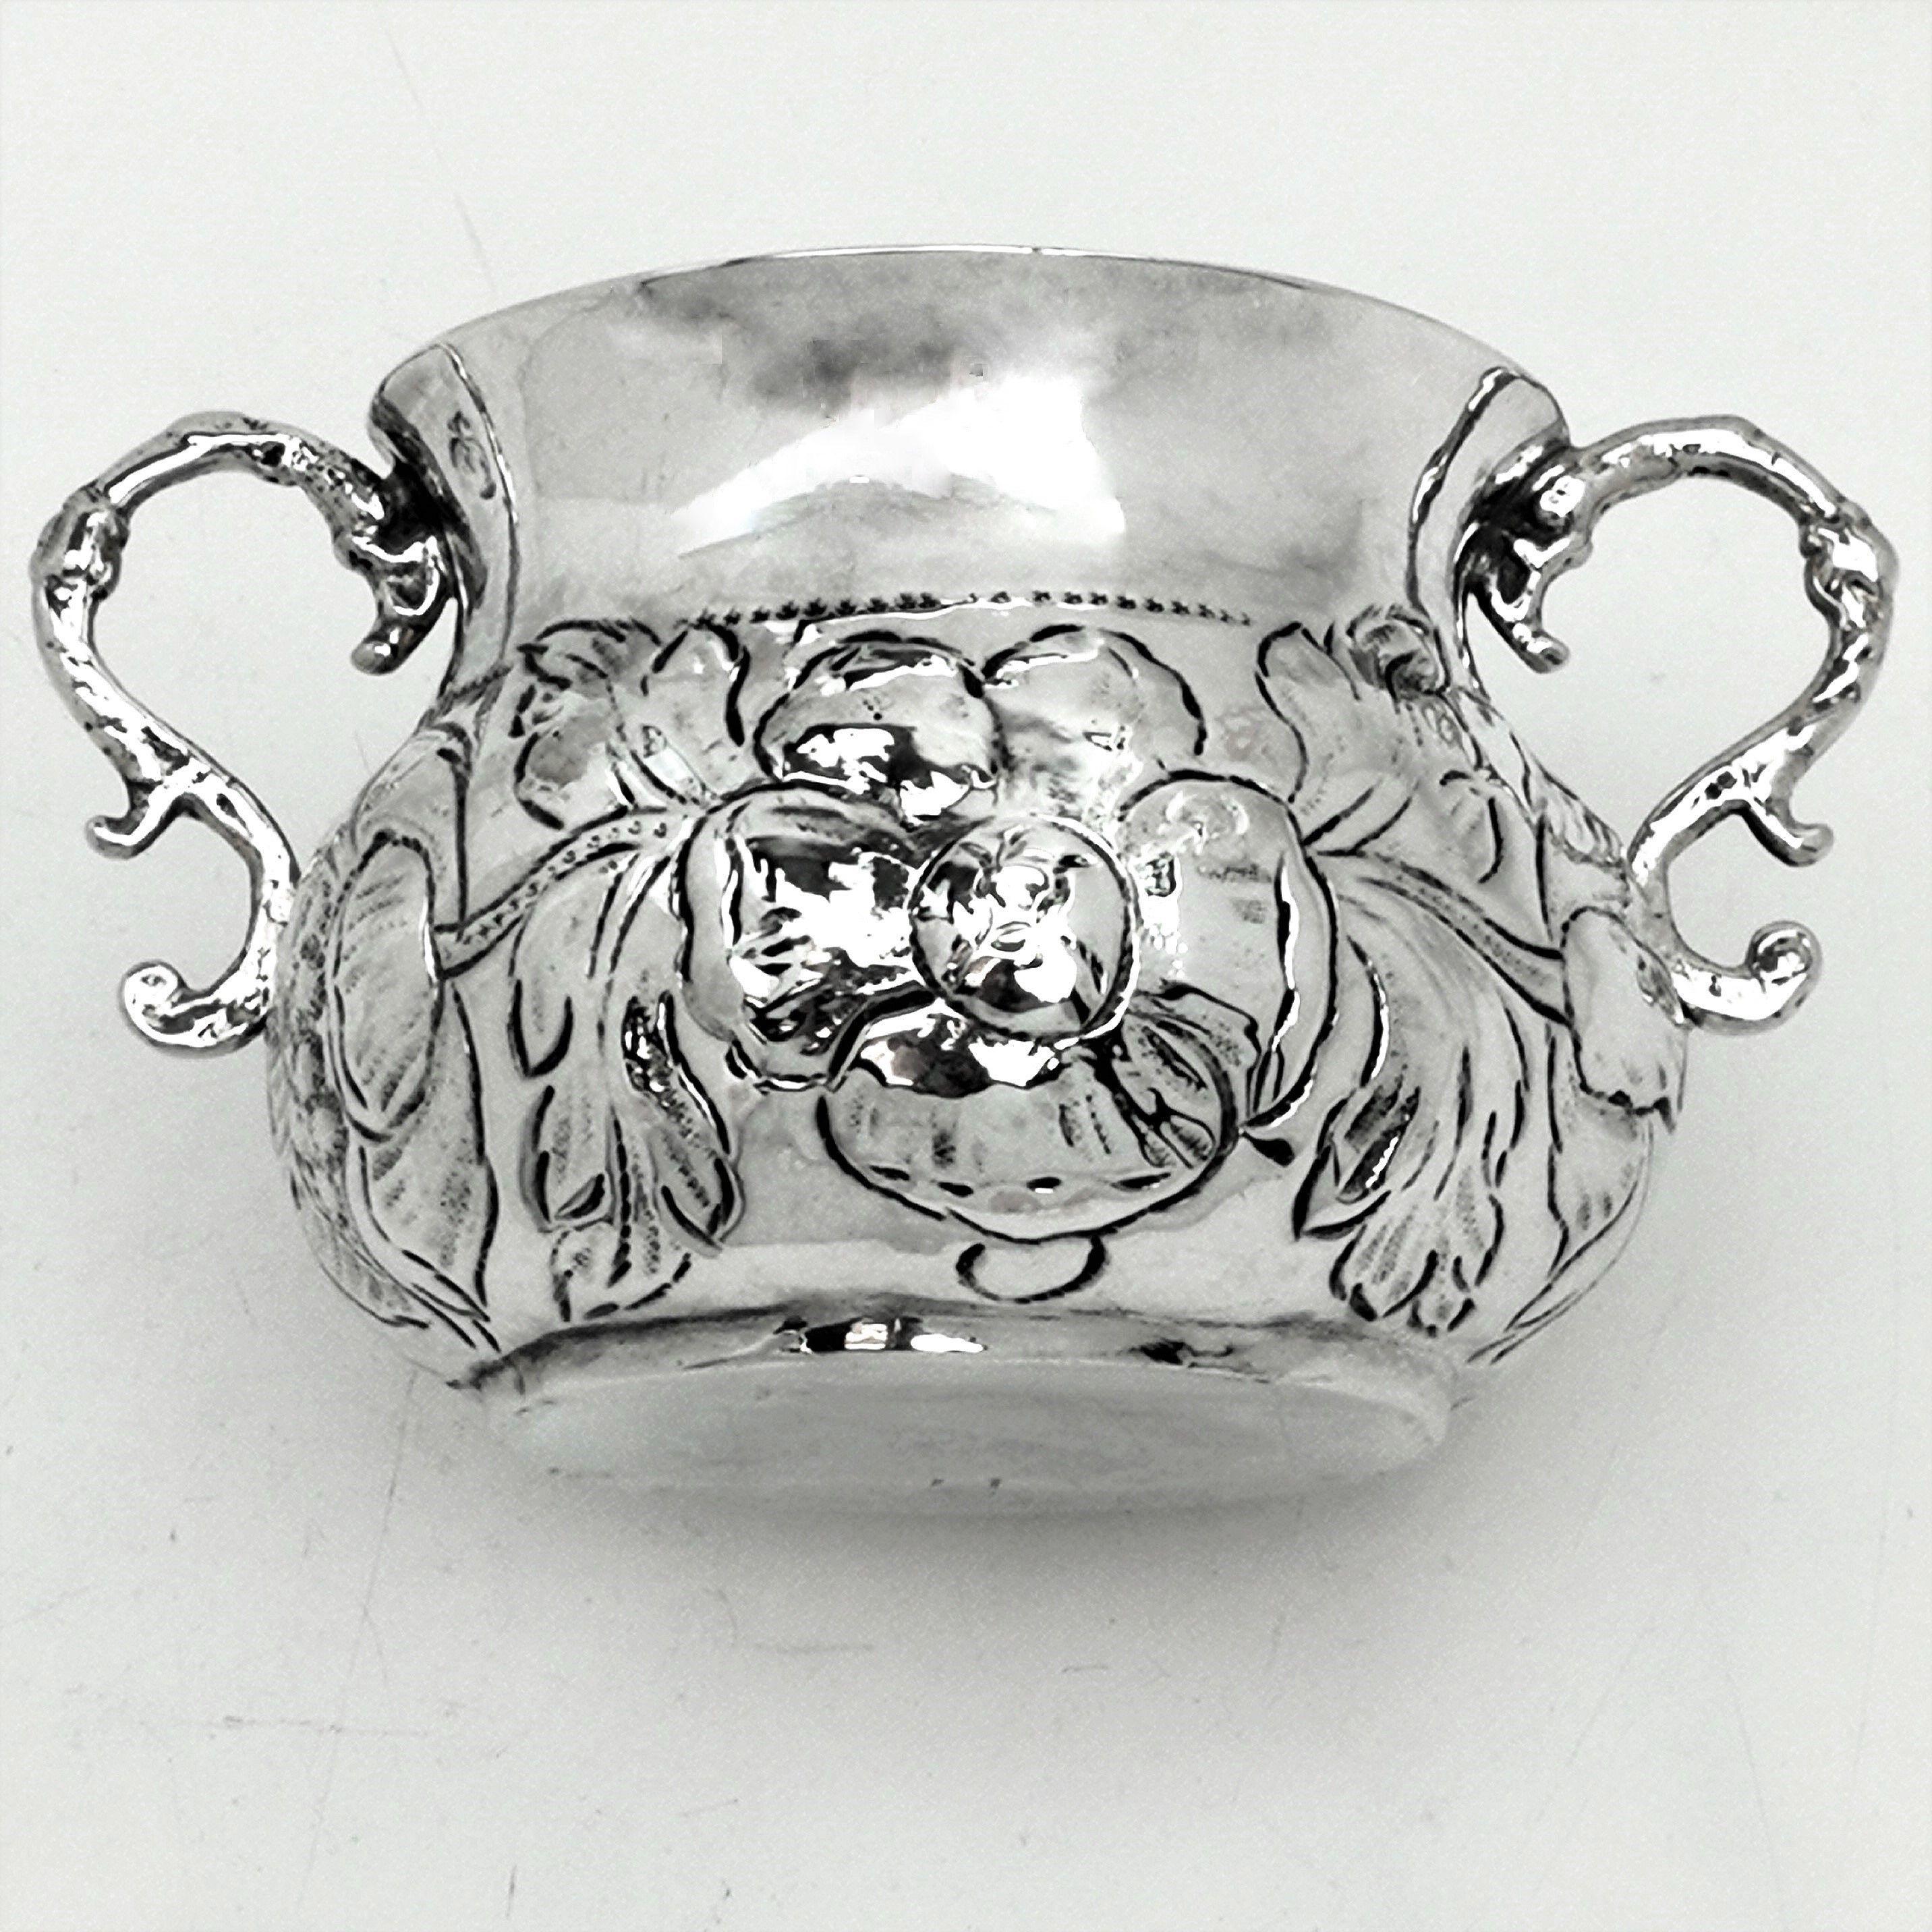 Une magnifique Porringer / Coupe à deux anses en argent massif ancien Charles II du 17ème siècle avec un motif floral ciselé ornementé autour du corps ventru de la Coupe. Le gobelet est doté de deux élégantes poignées à volutes.

Fabriqué vers 1675